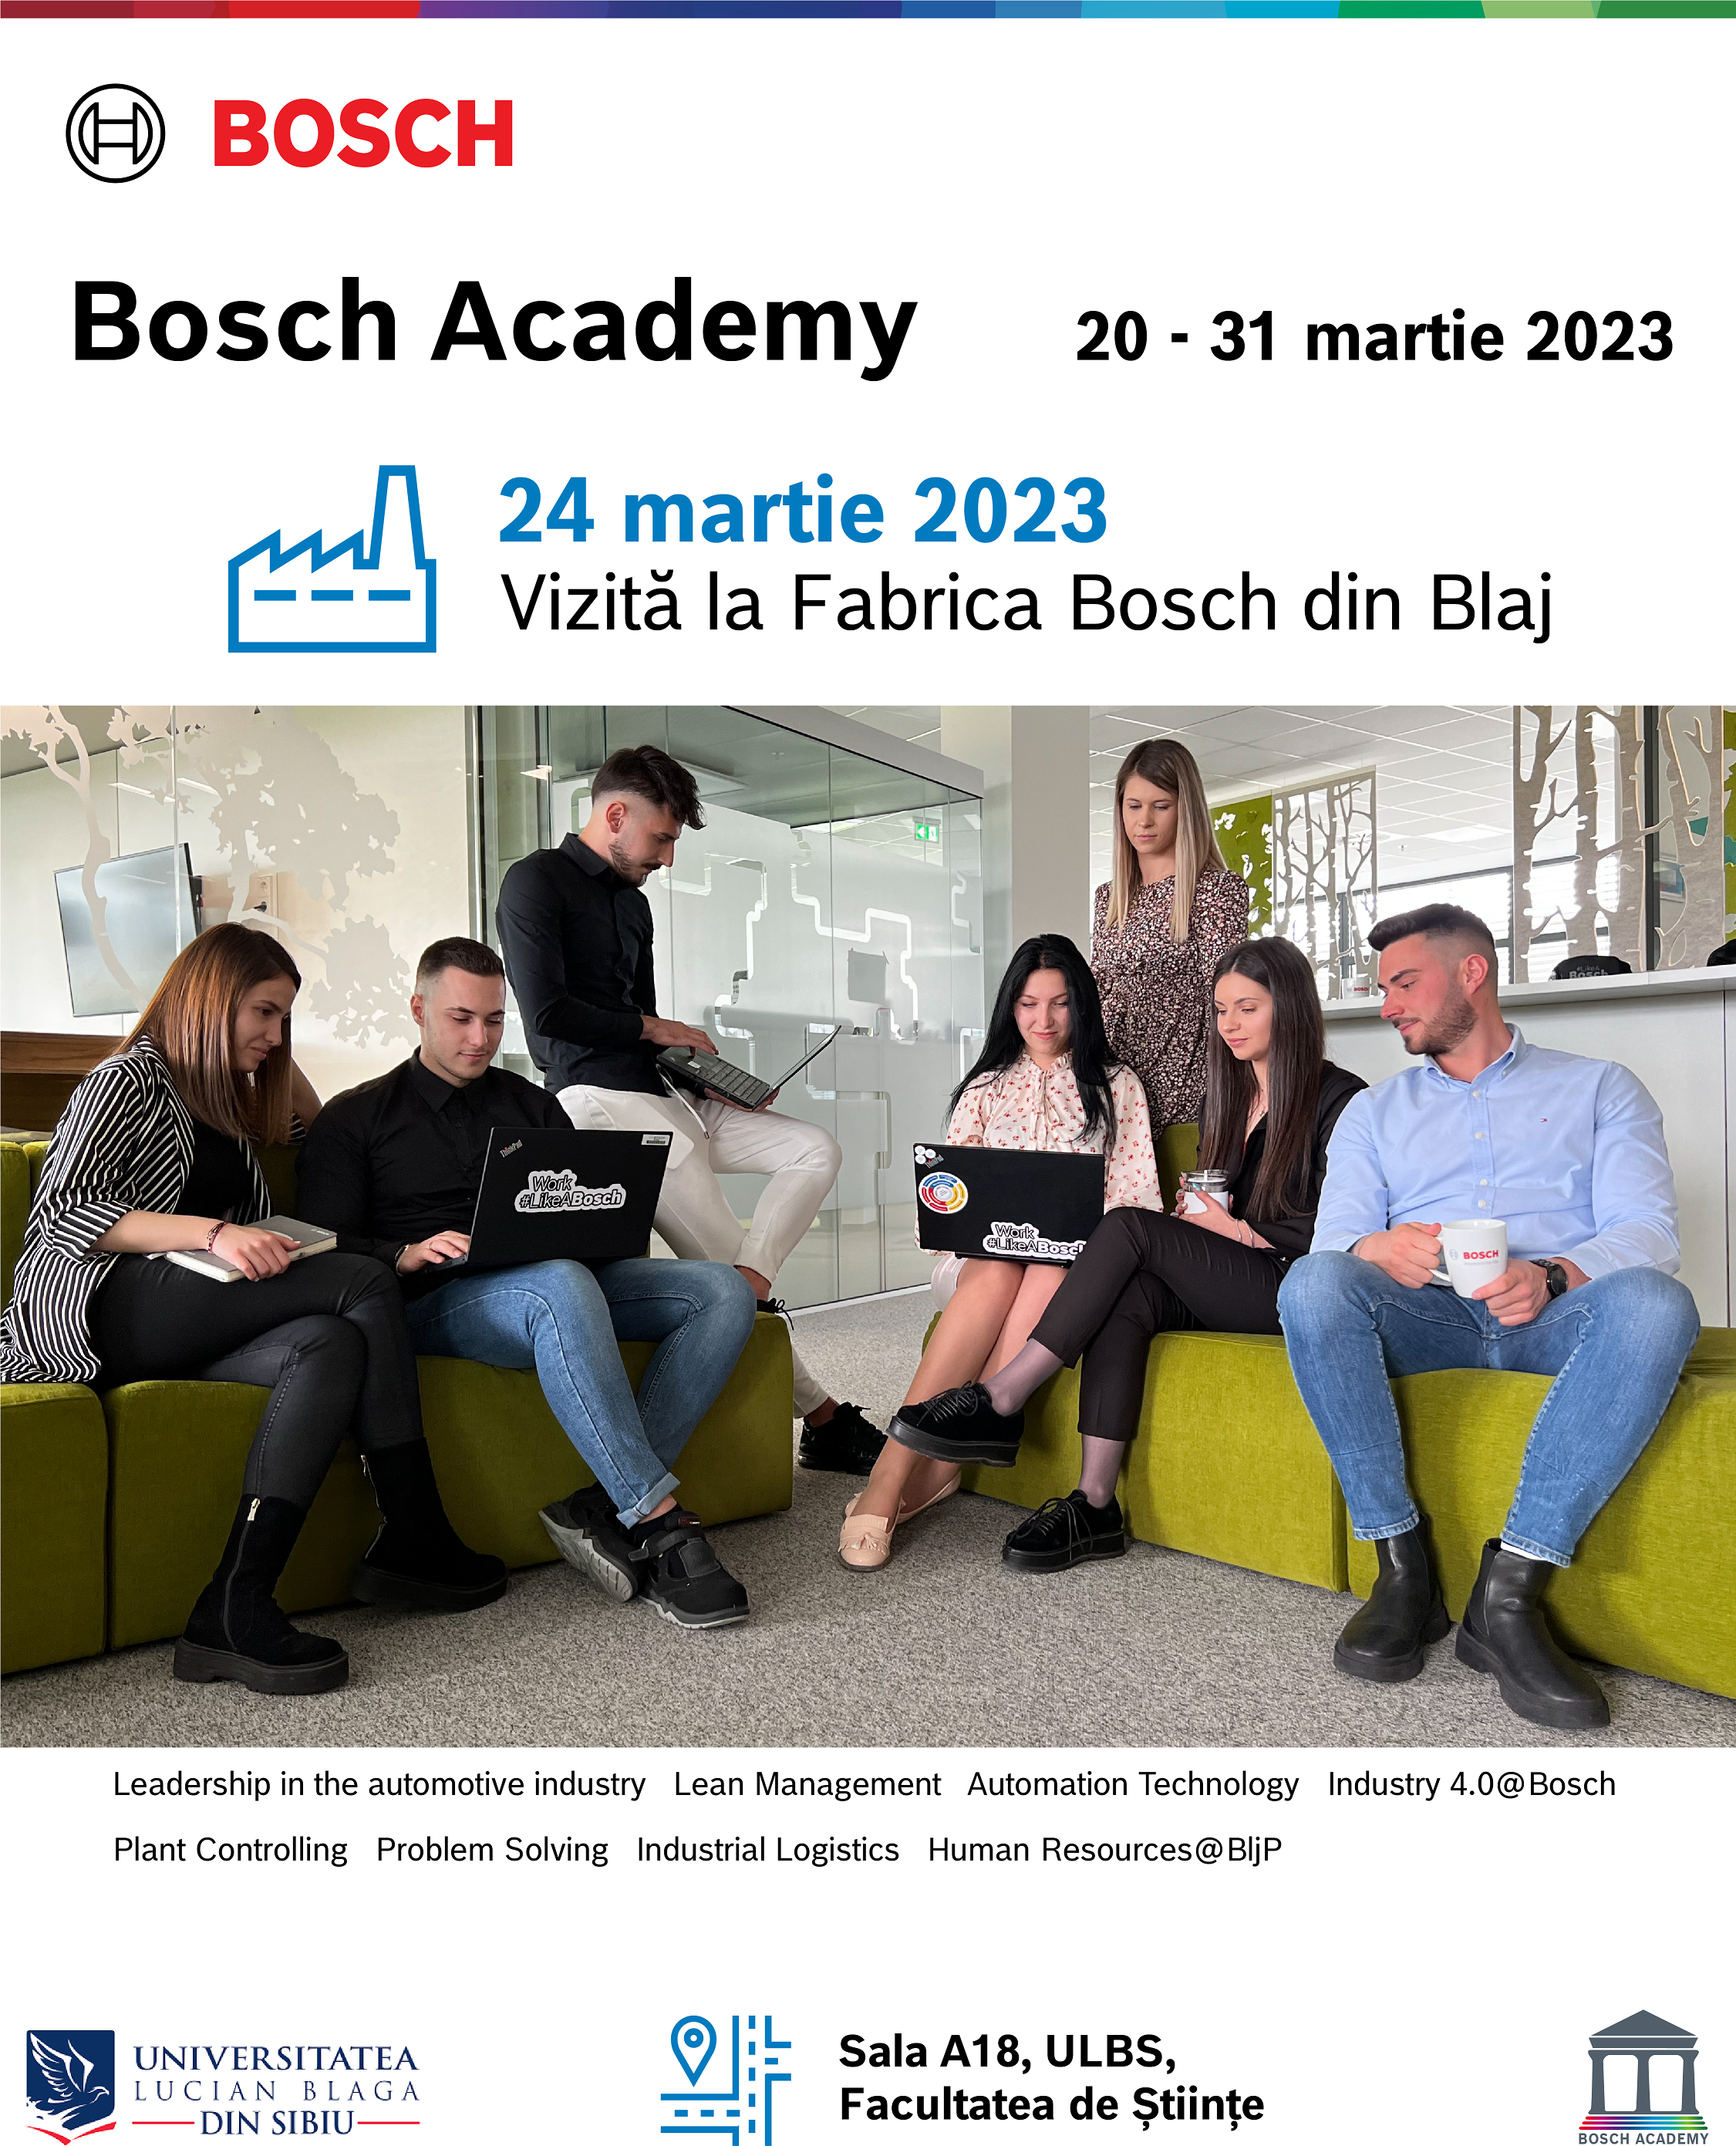 Bosch Academy 2023